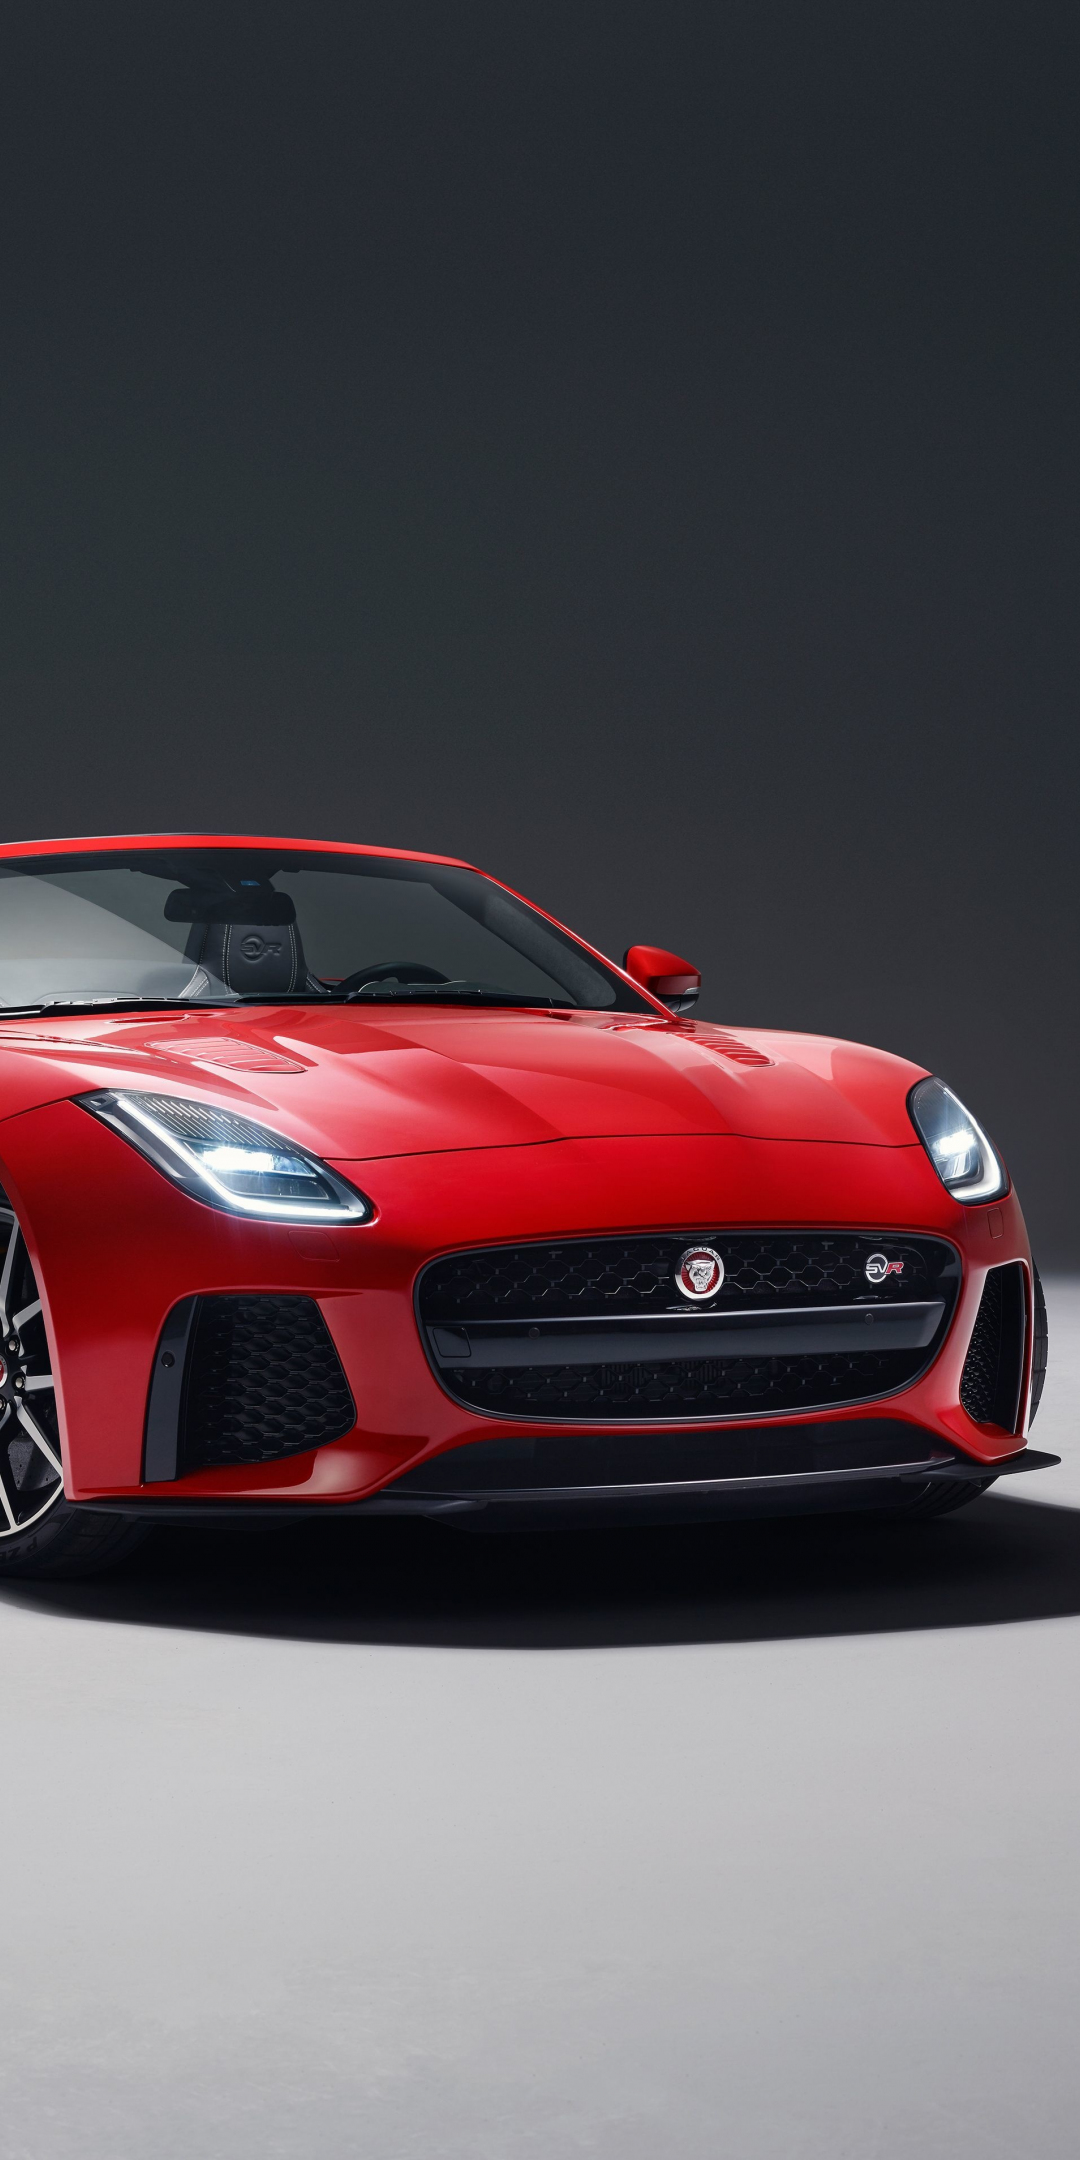 2018, Jaguar F-TYPE SVR, red, front, 1080x2160 wallpaper